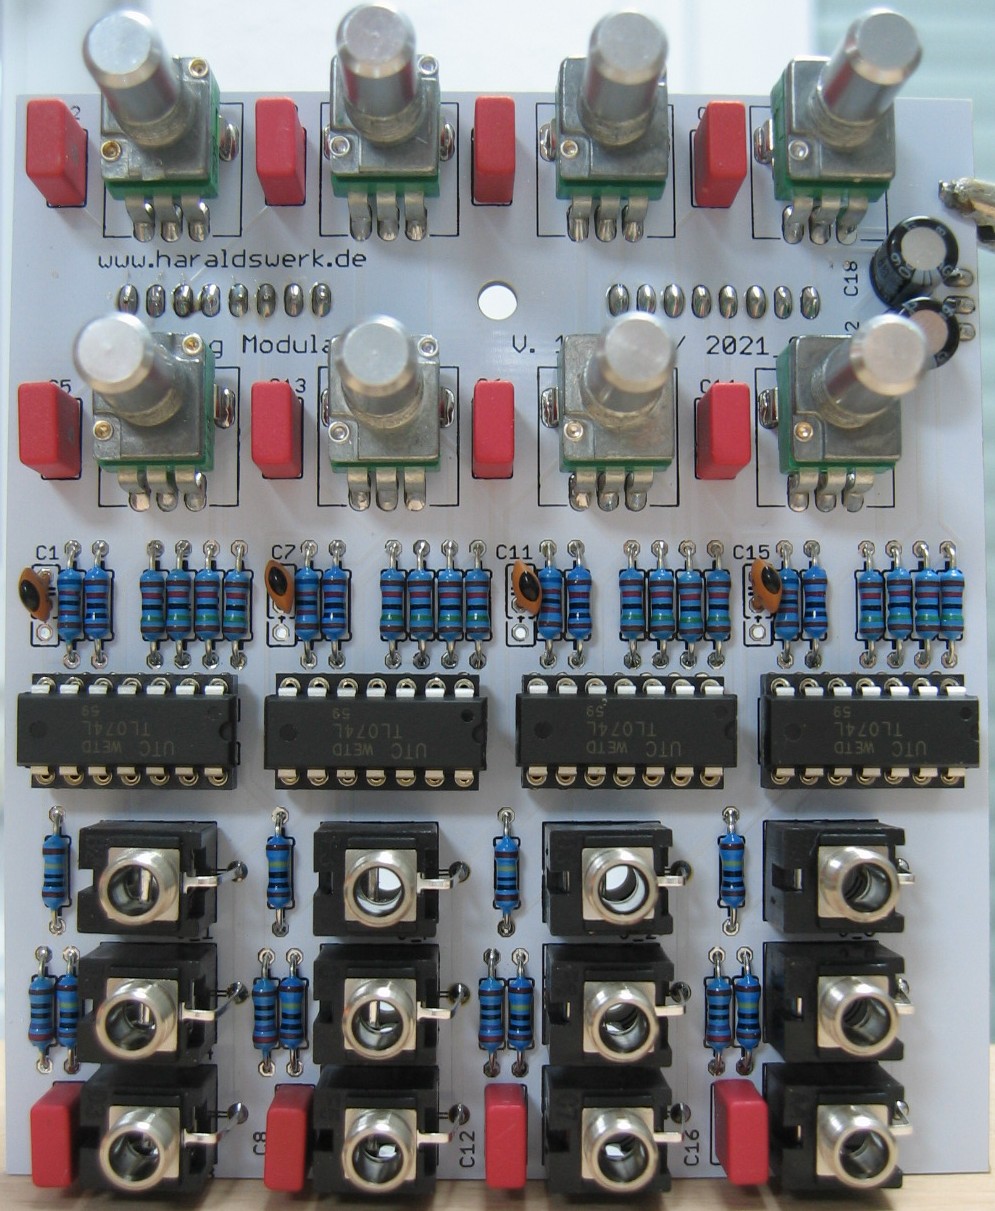 Quad Ringmodulator populated control PCB